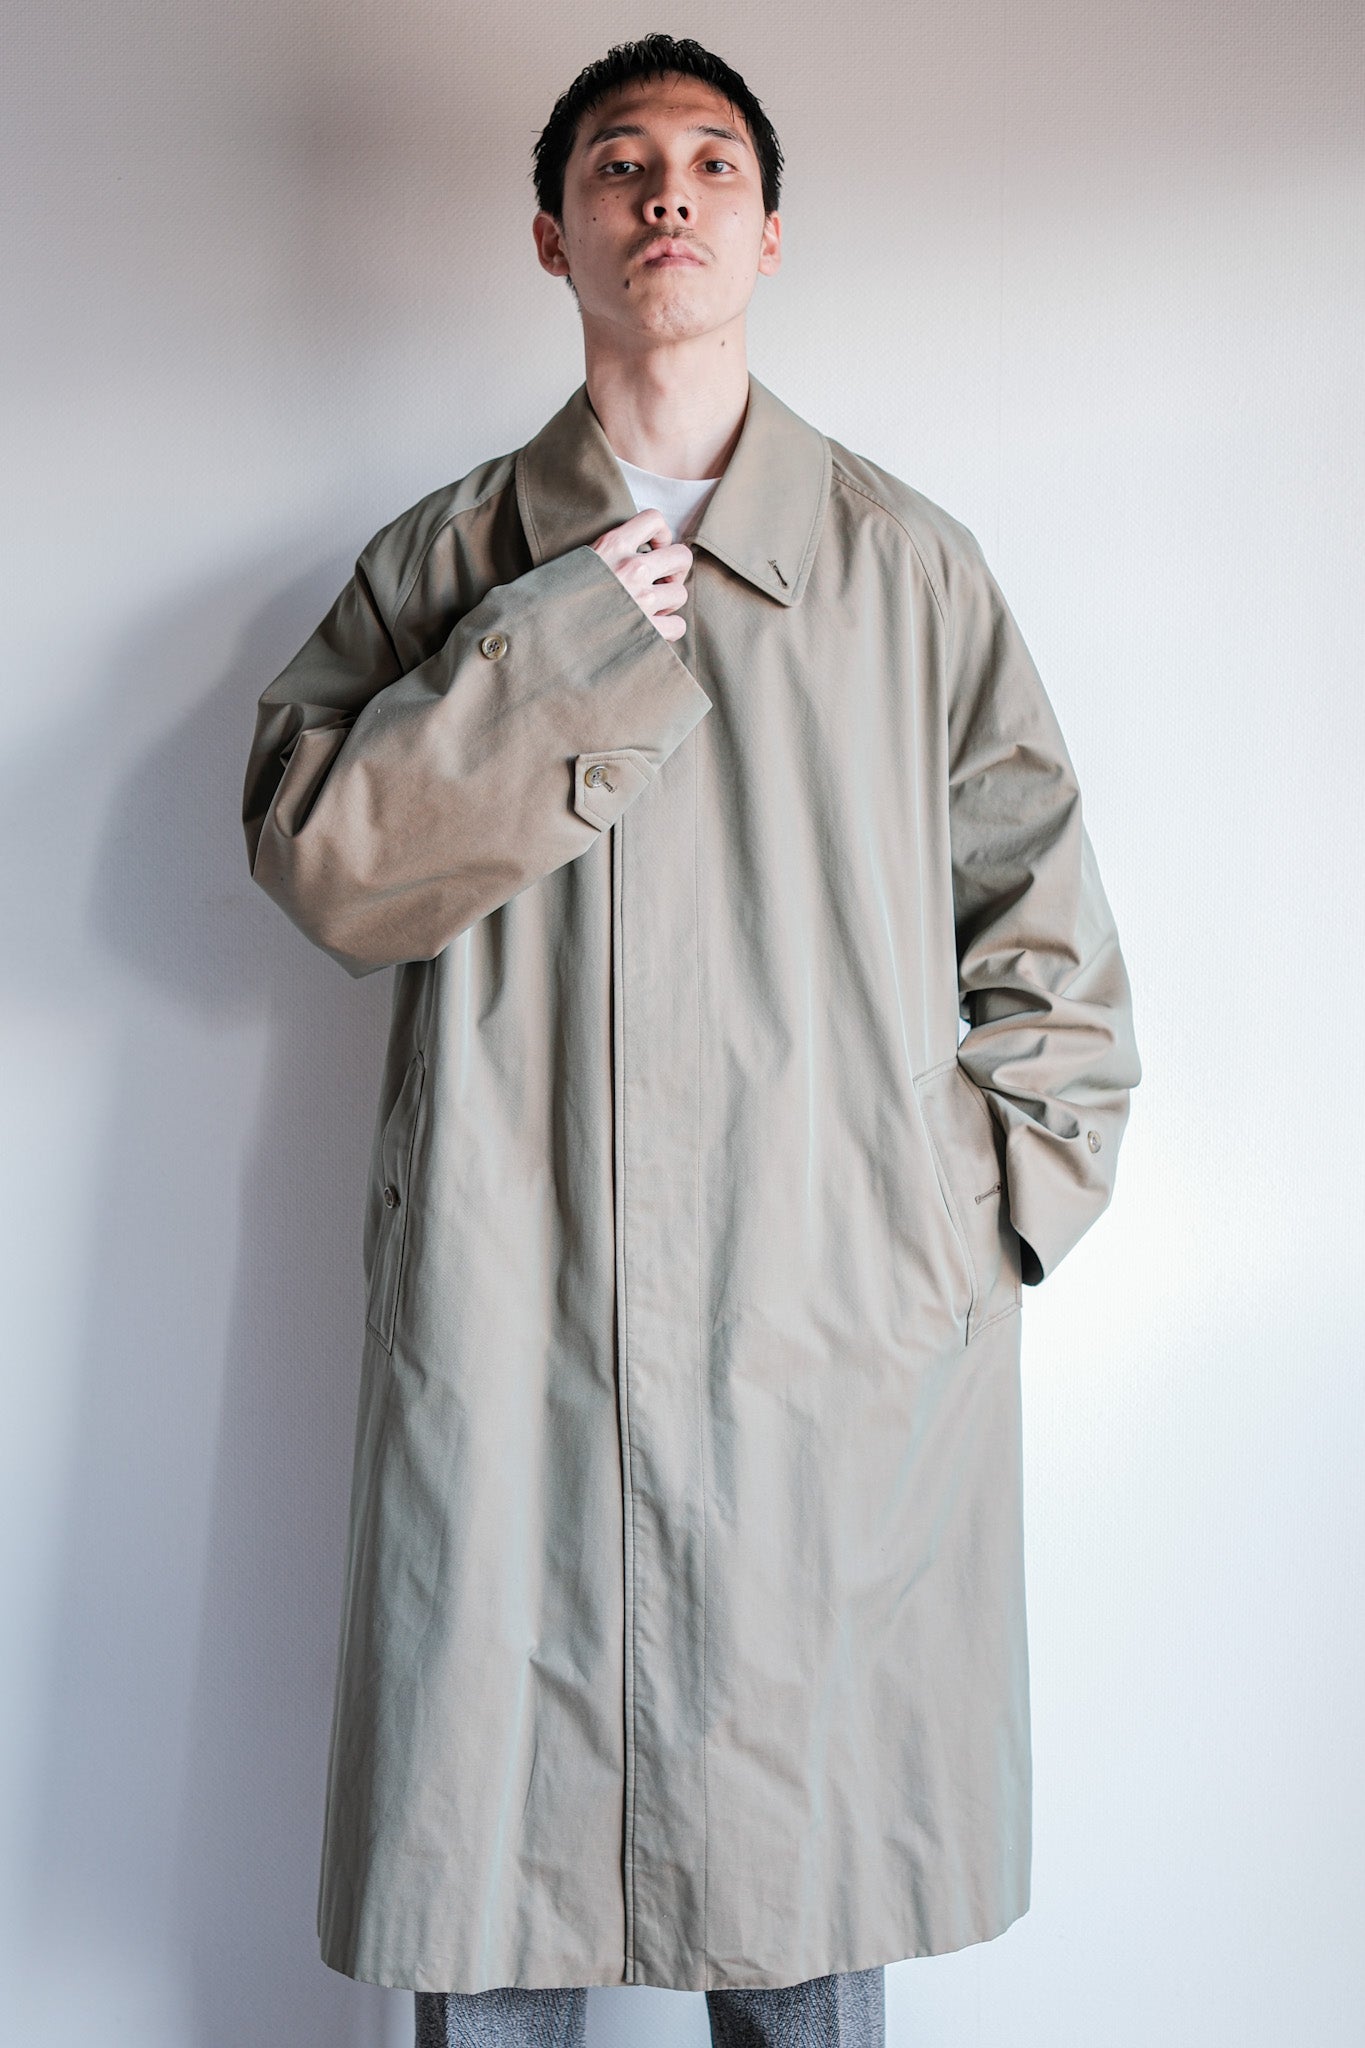 [〜80年代]復古burberrys單raglen balmacaan外套C100帶有襯裡尺寸。50REG“ tamamushi”